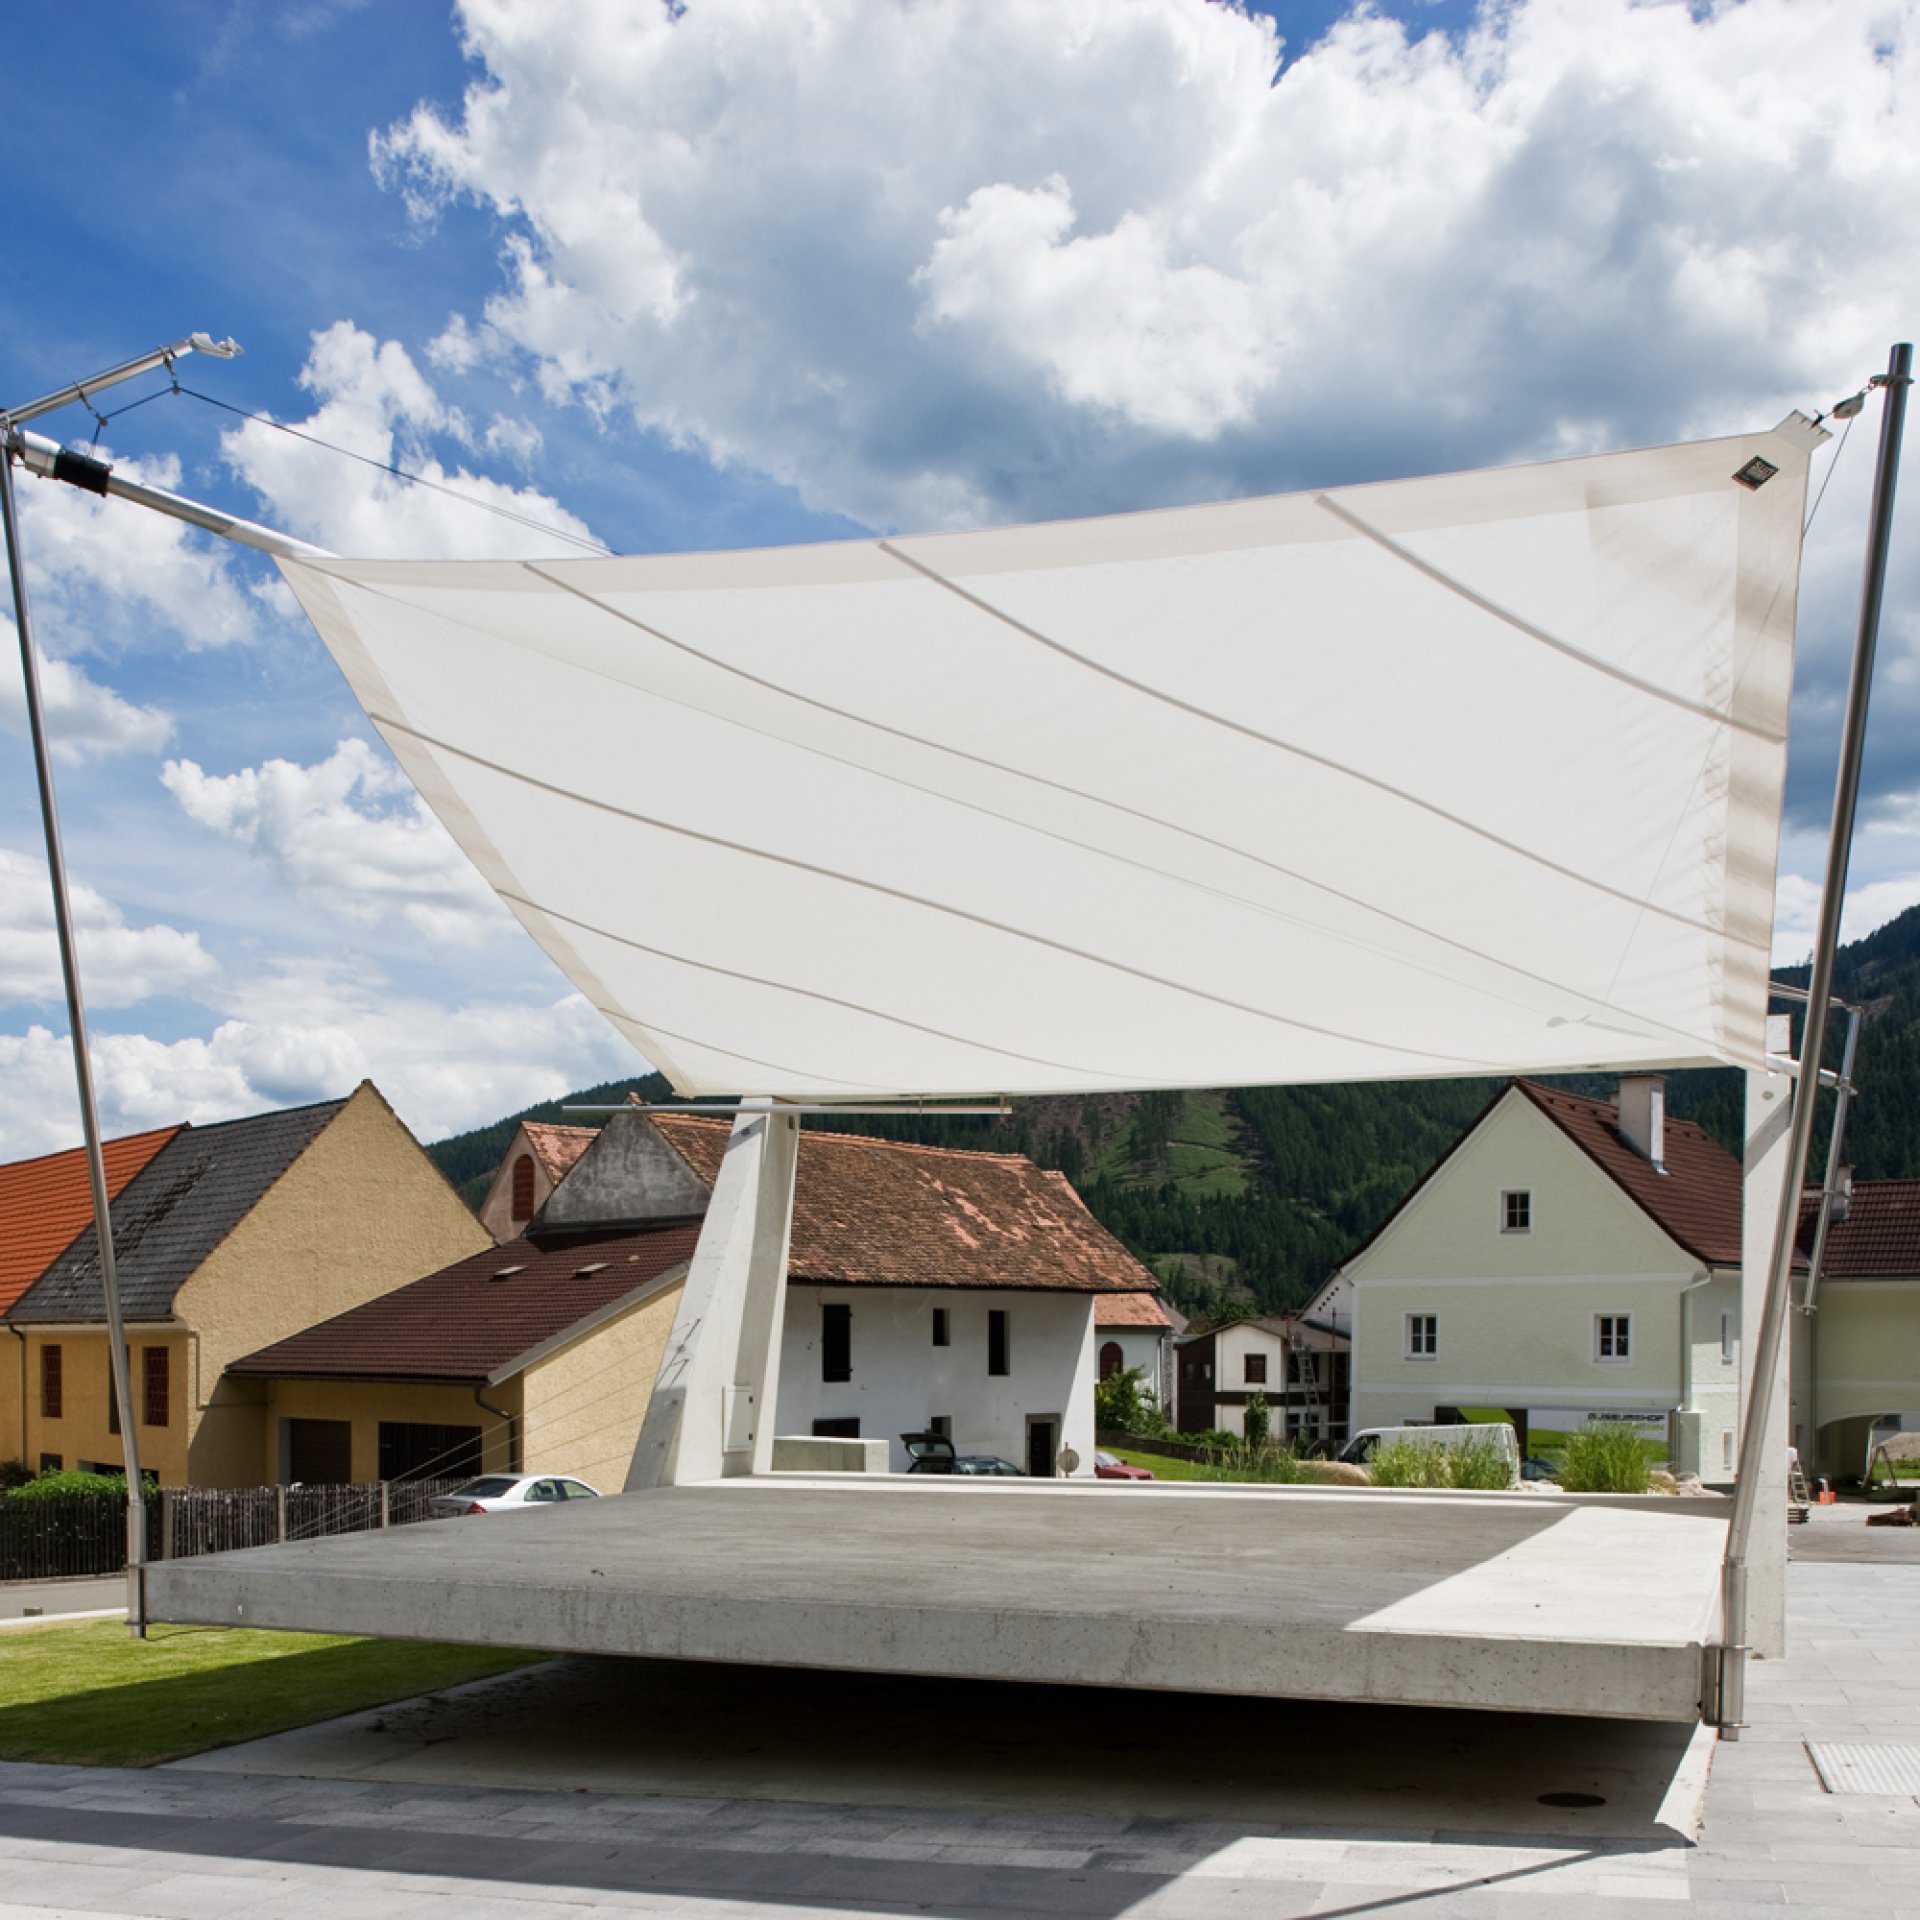 Sunsquare - vollautomatische Sonnensegelanlagen auf öffentlichen Plätzen.